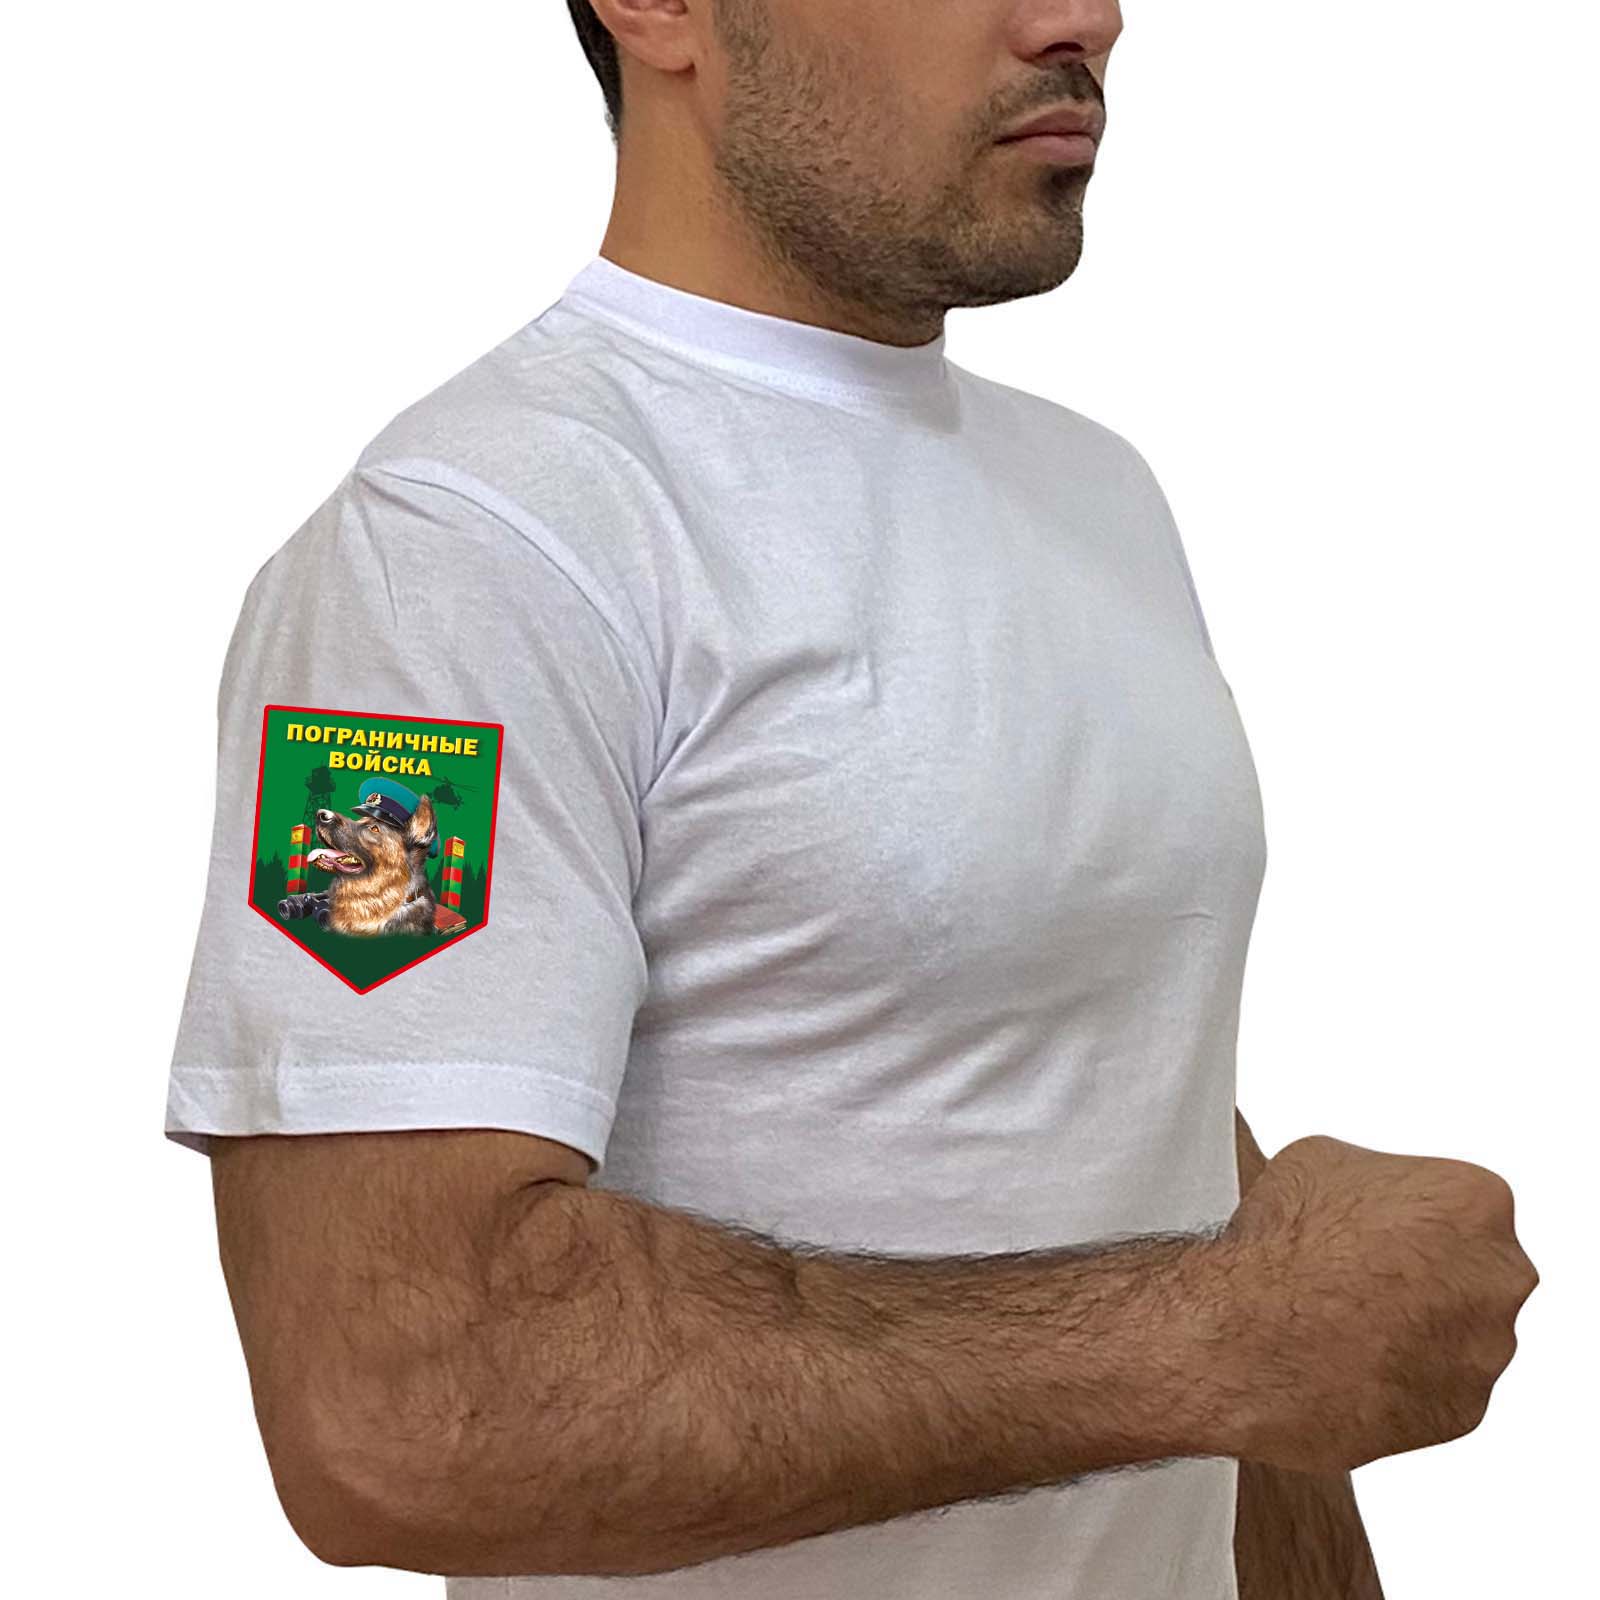 Белая футболка с термотрансфером "Пограничные войска" на рукаве